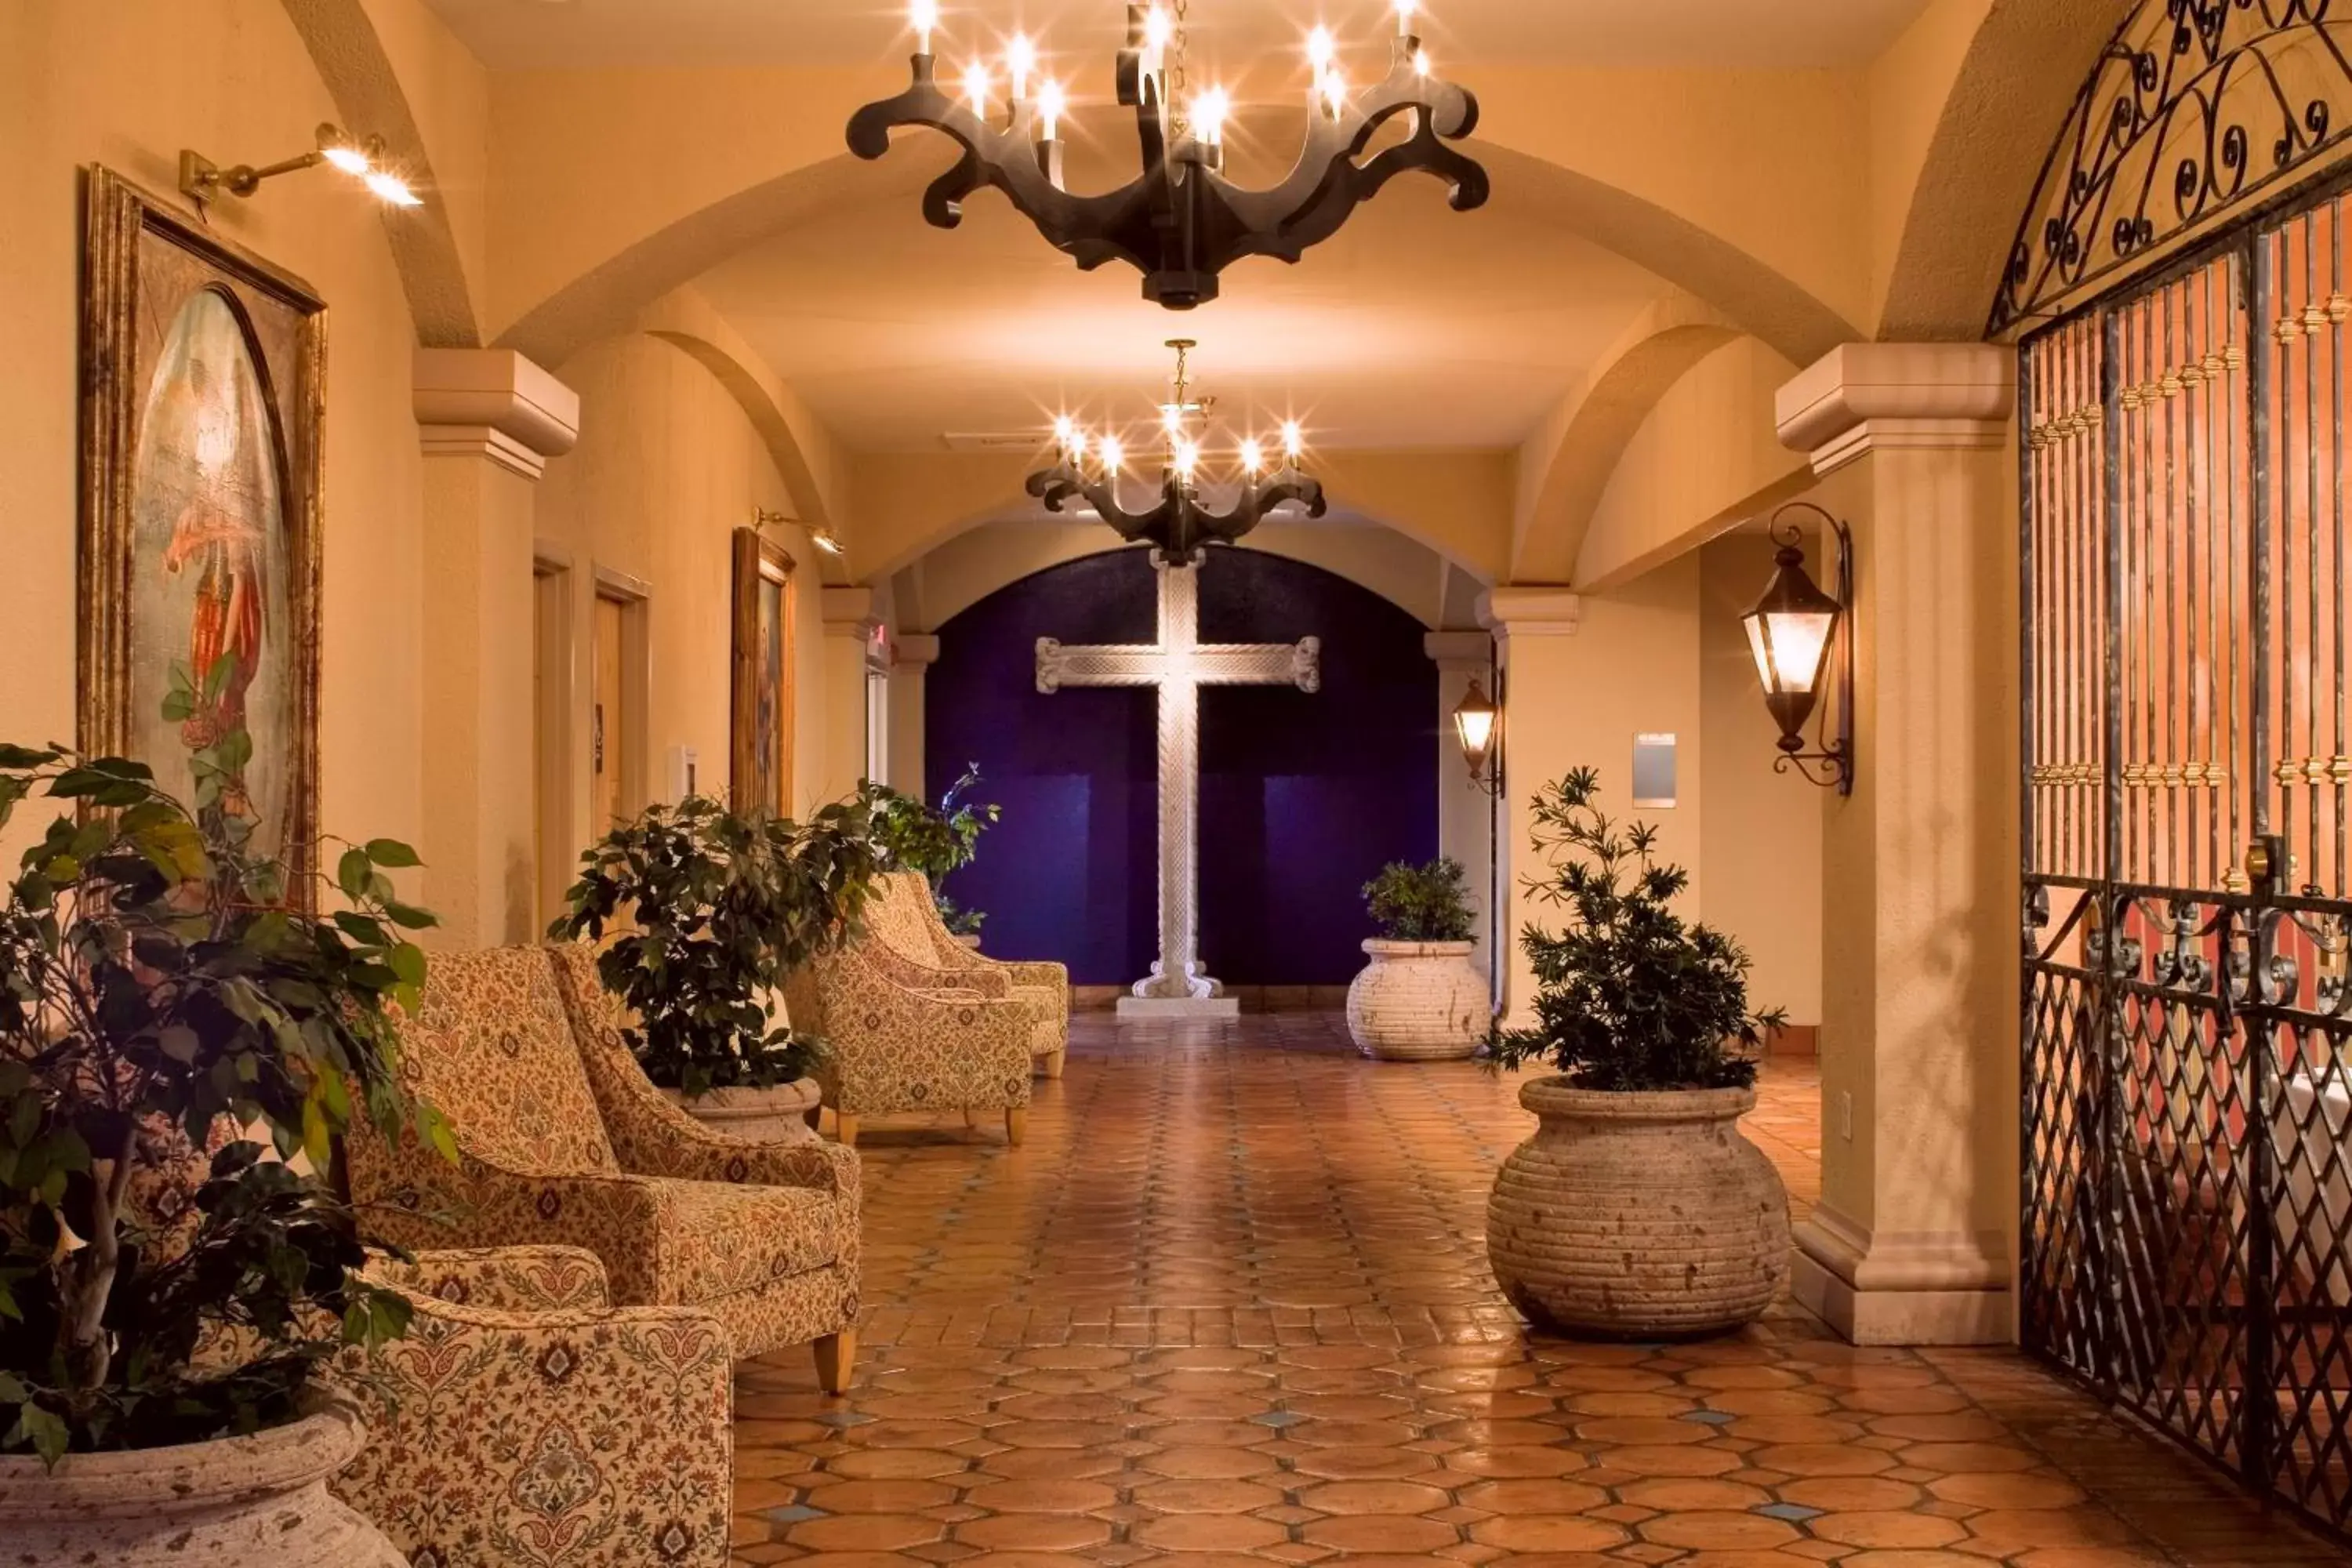 Lobby or reception, Lobby/Reception in Hotel Encanto de Las Cruces